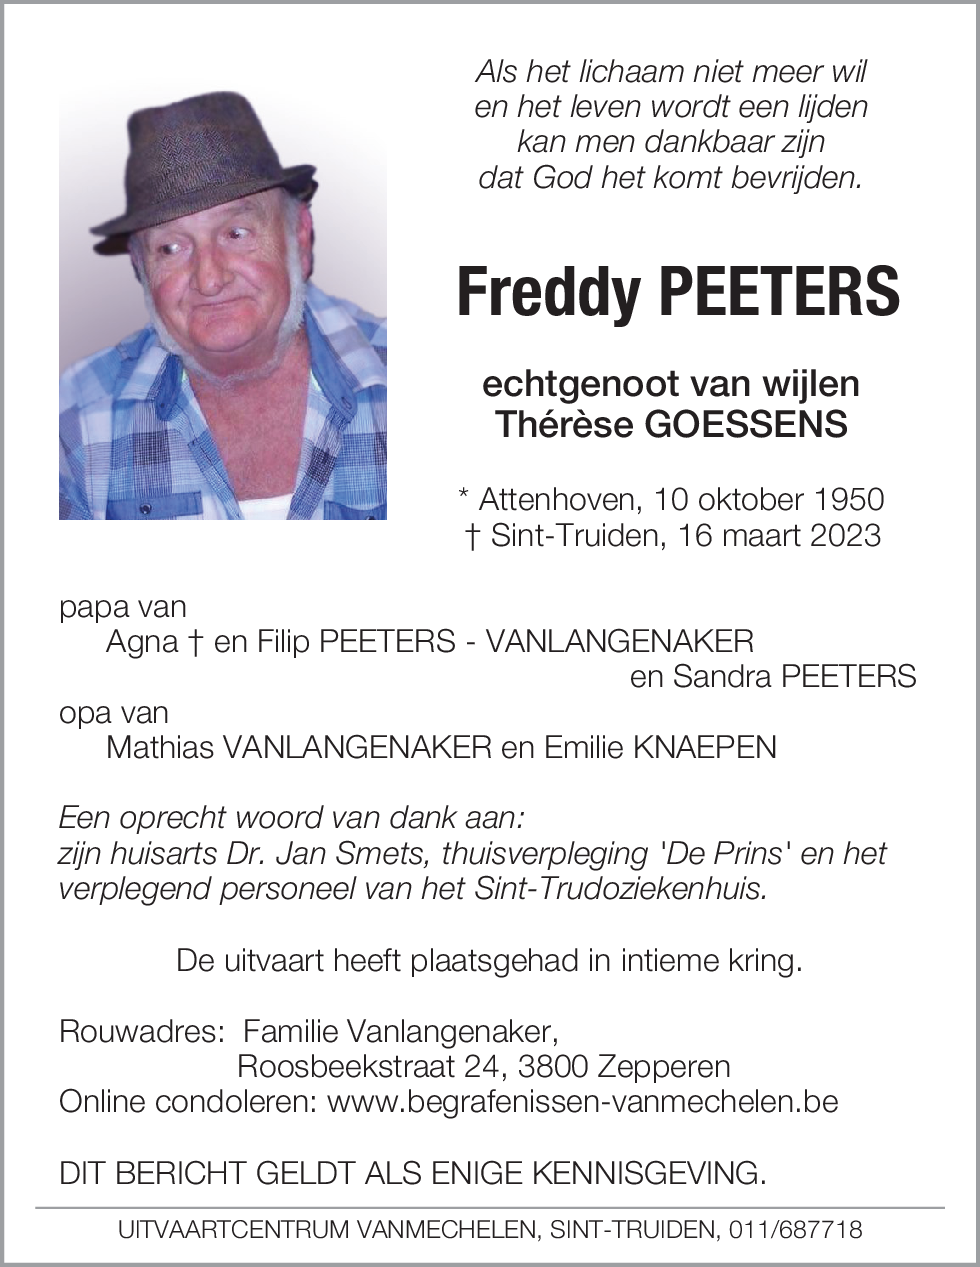 Freddy Peeters